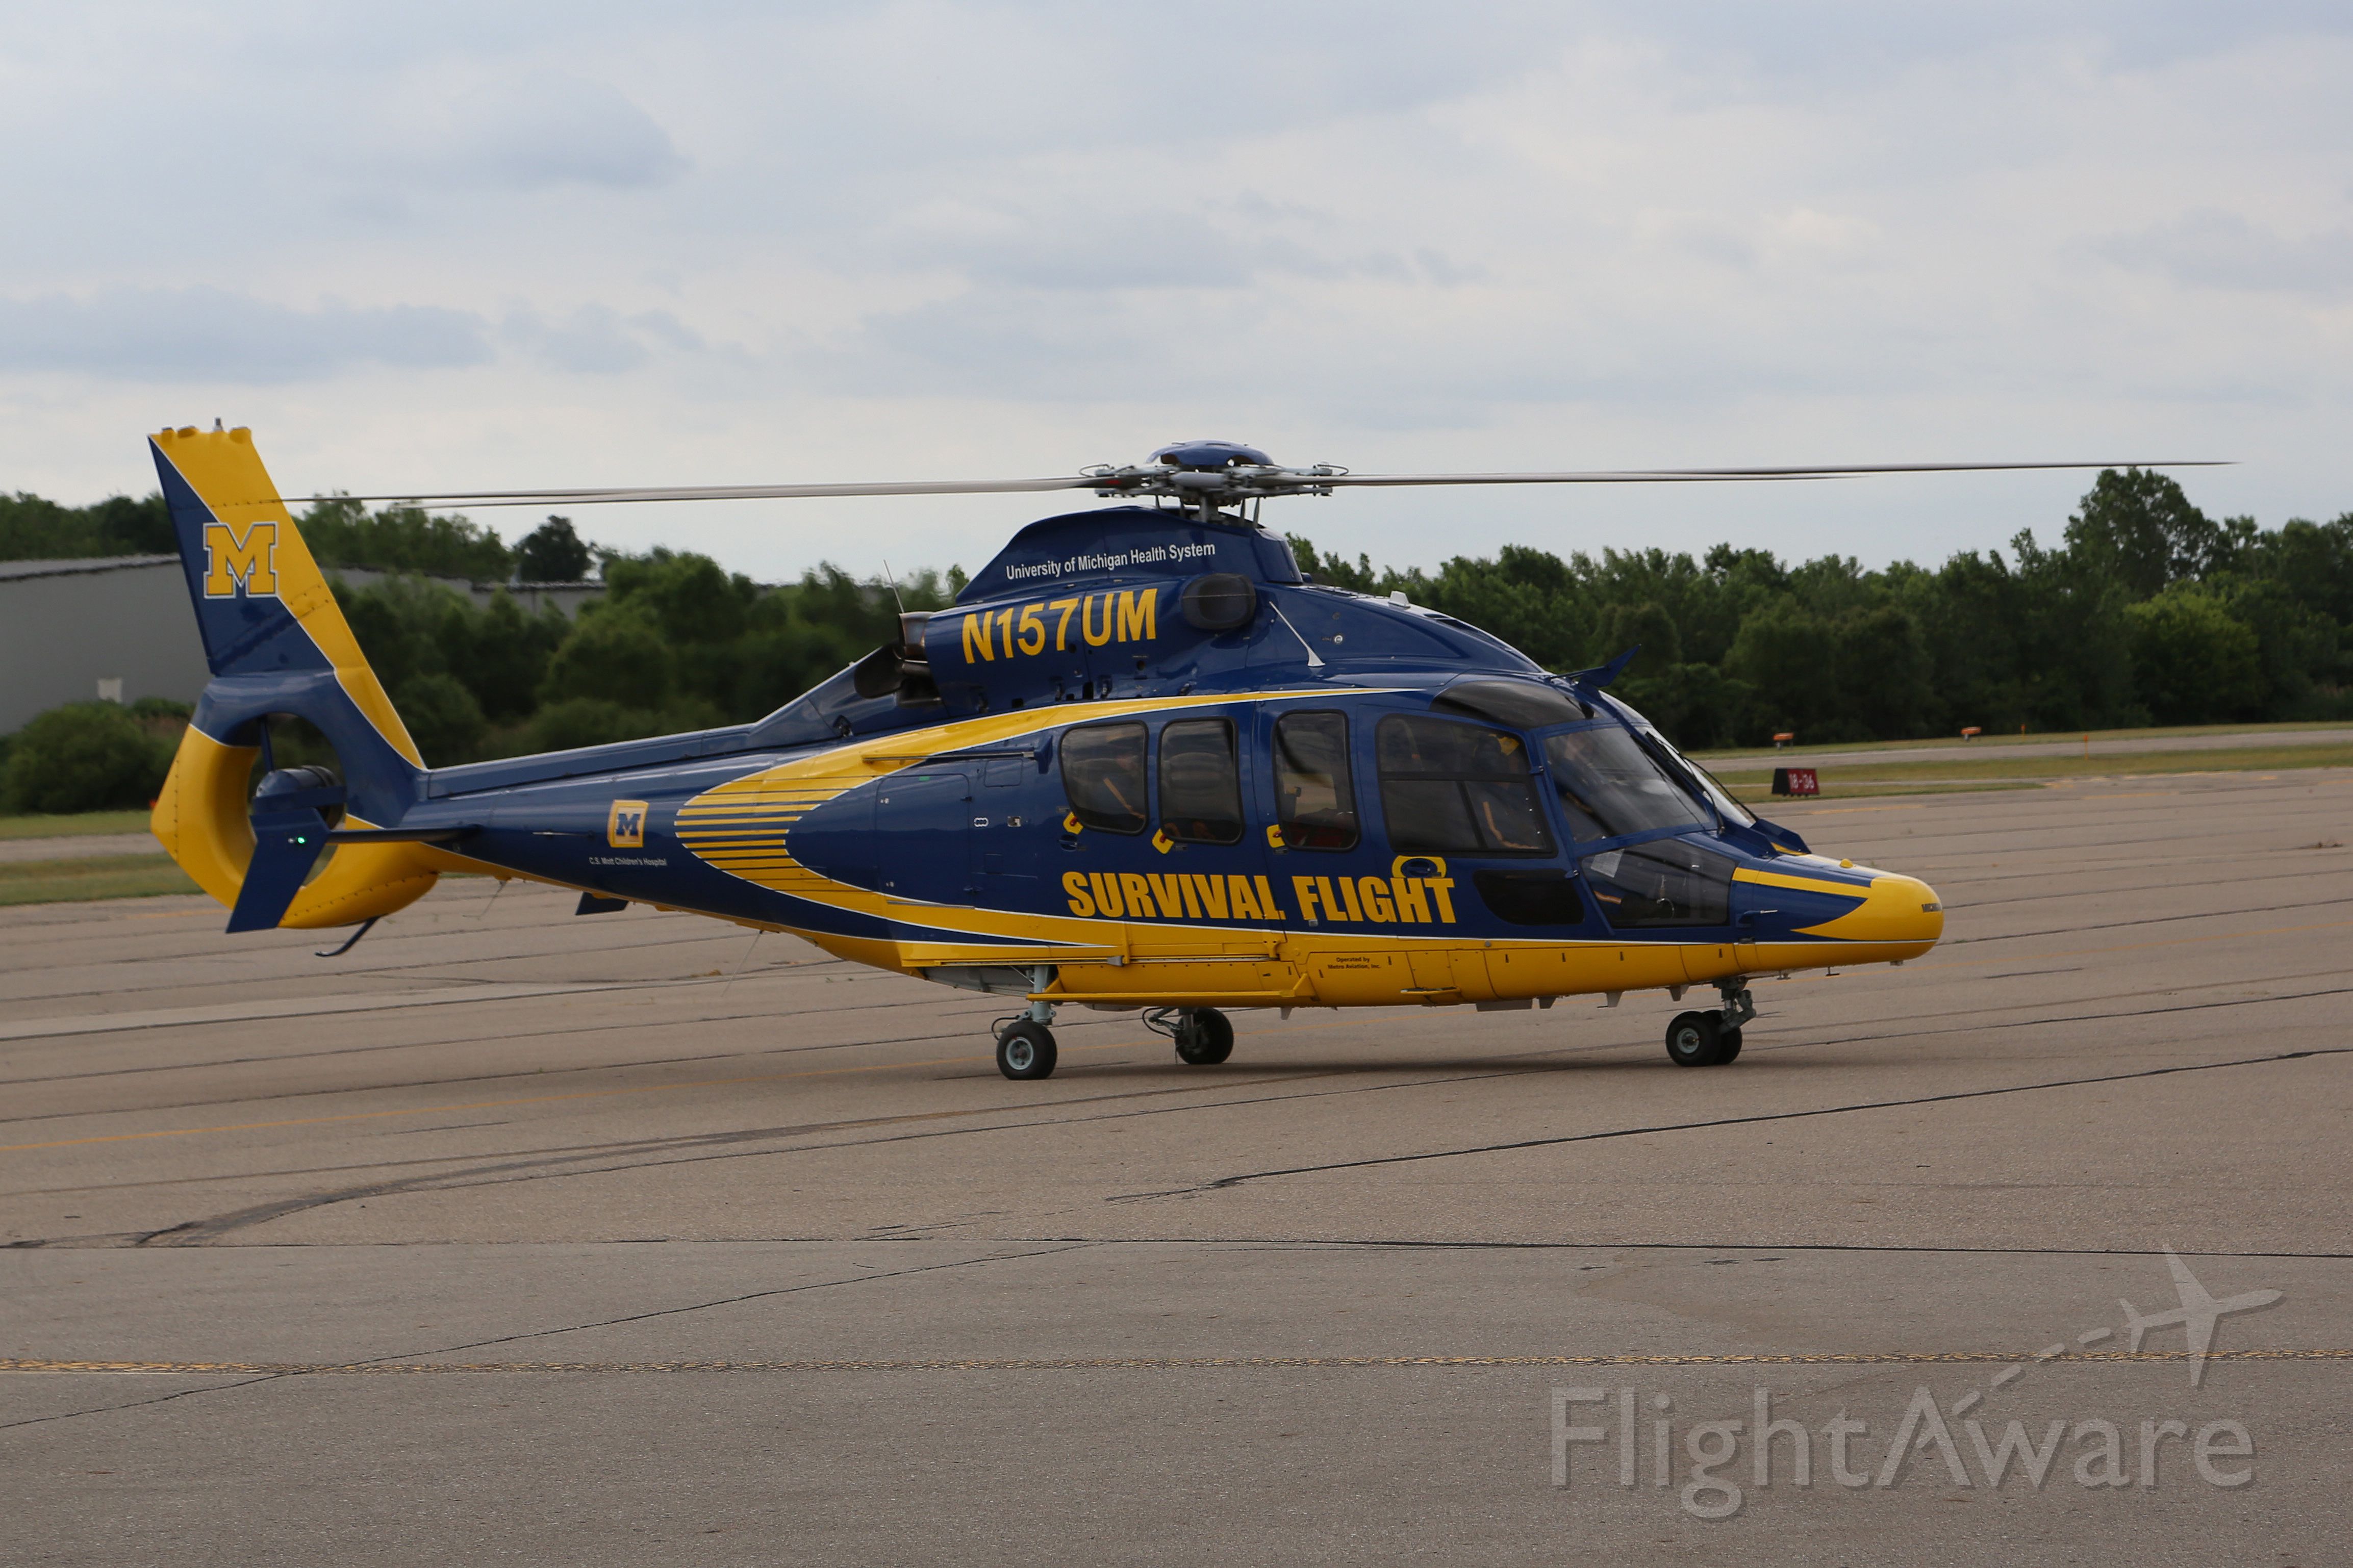 Eurocopter EC-155 (N157UM)